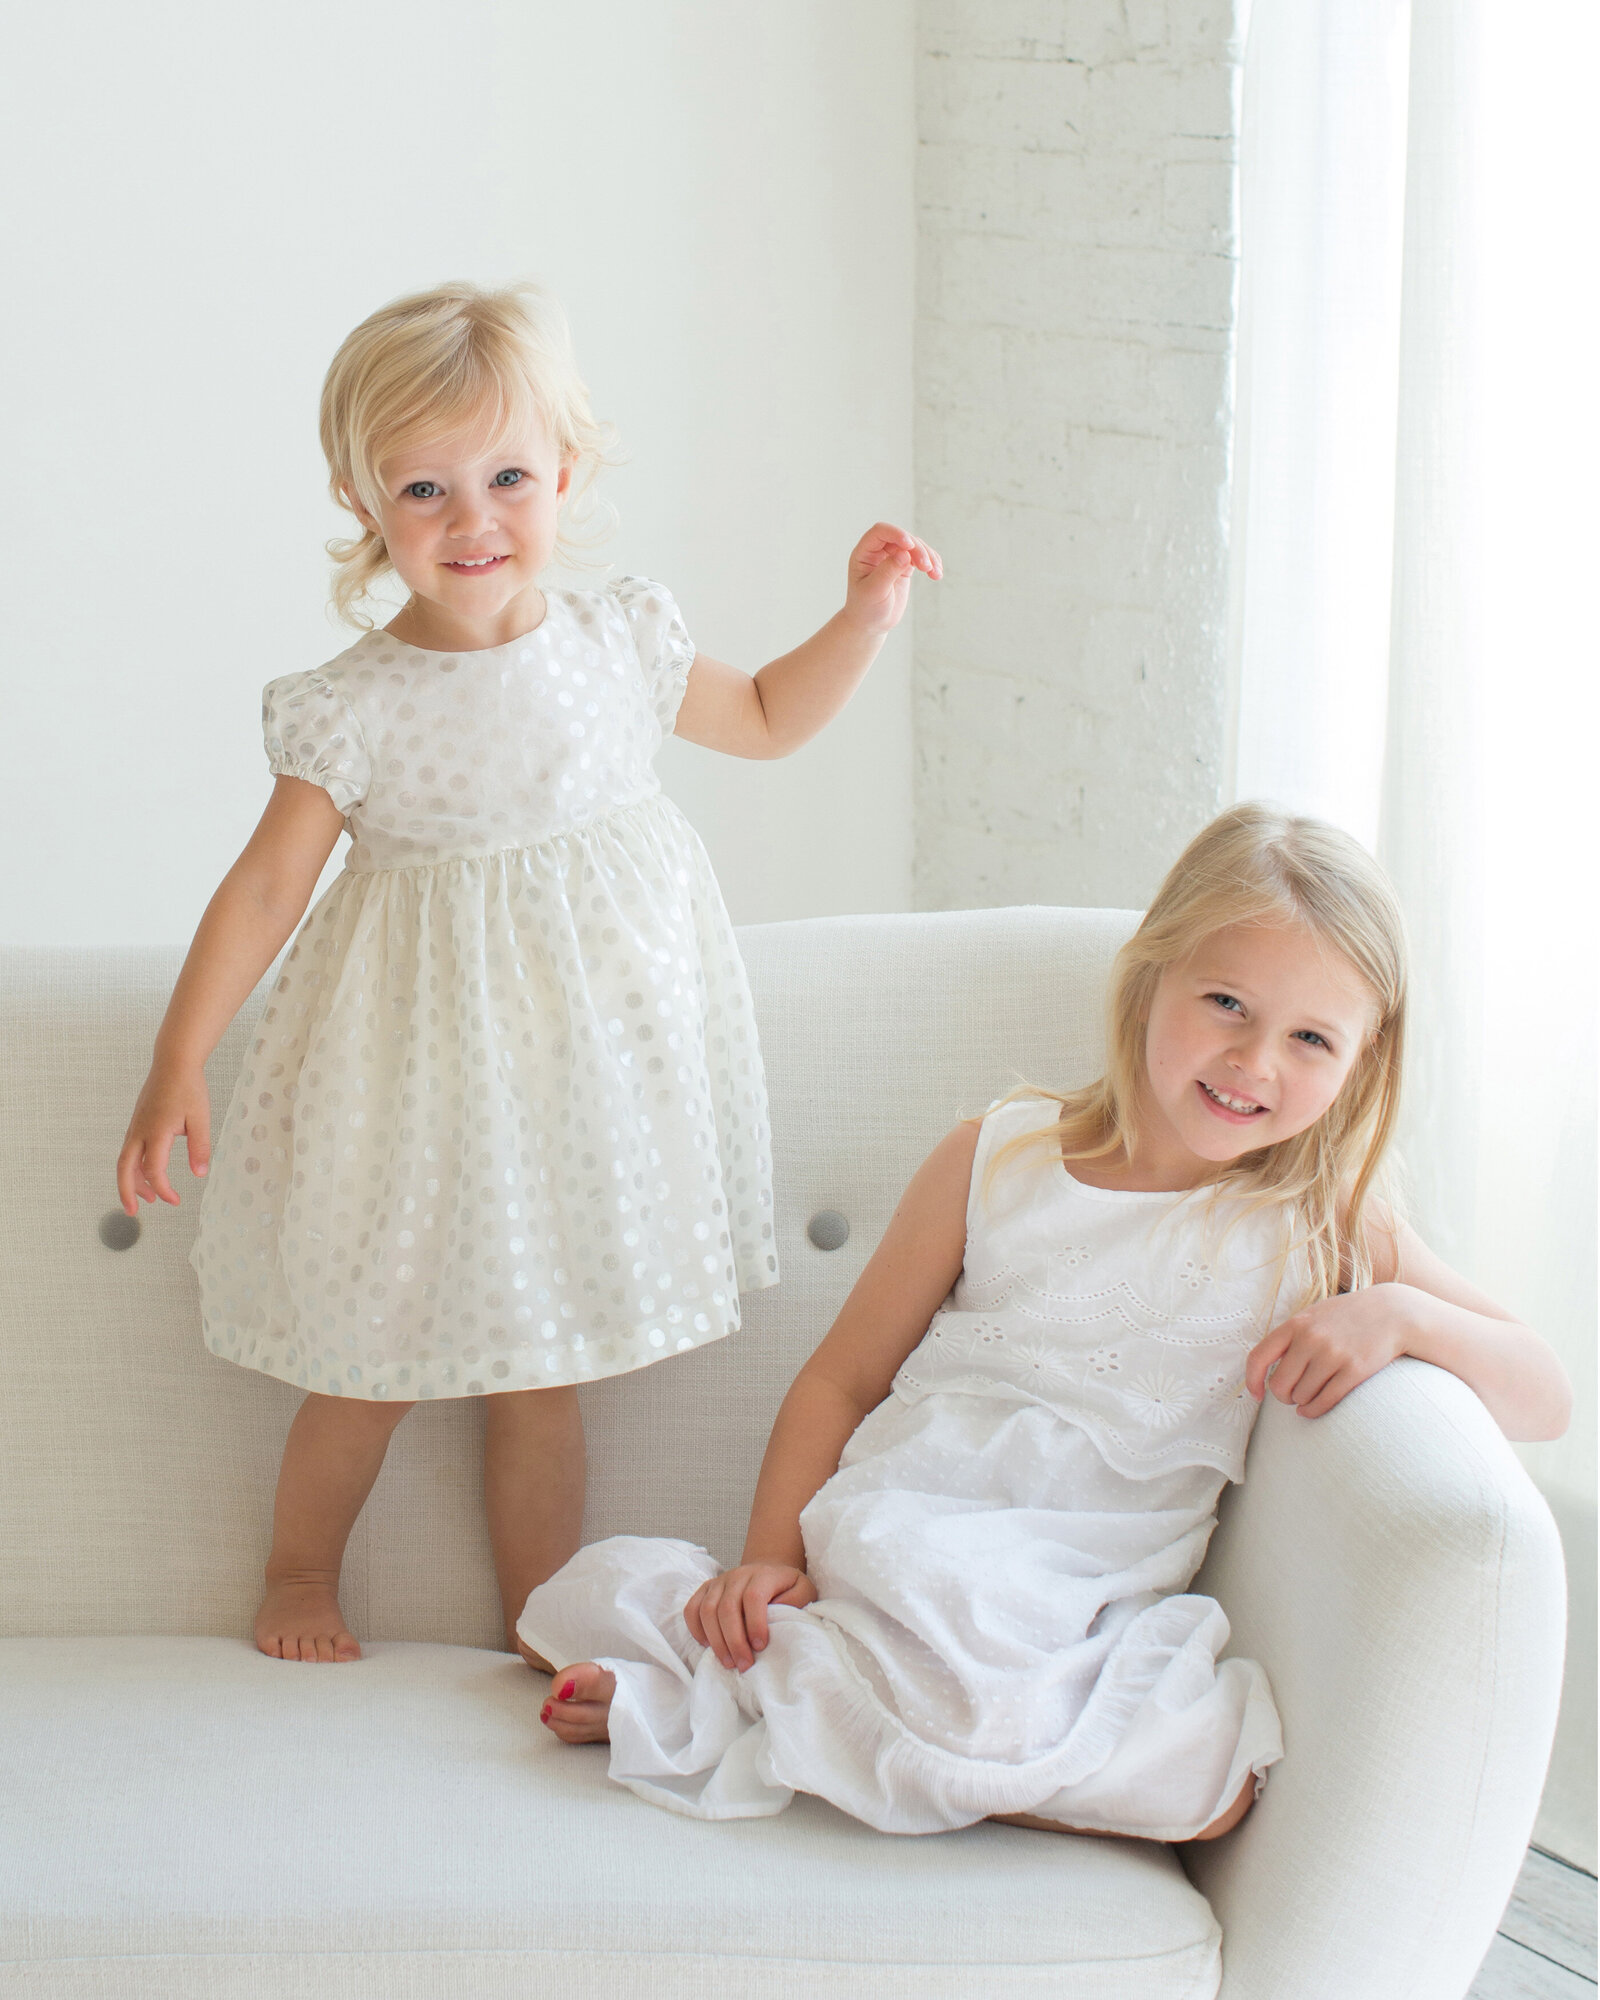 girls-smiling-in-white-dresses